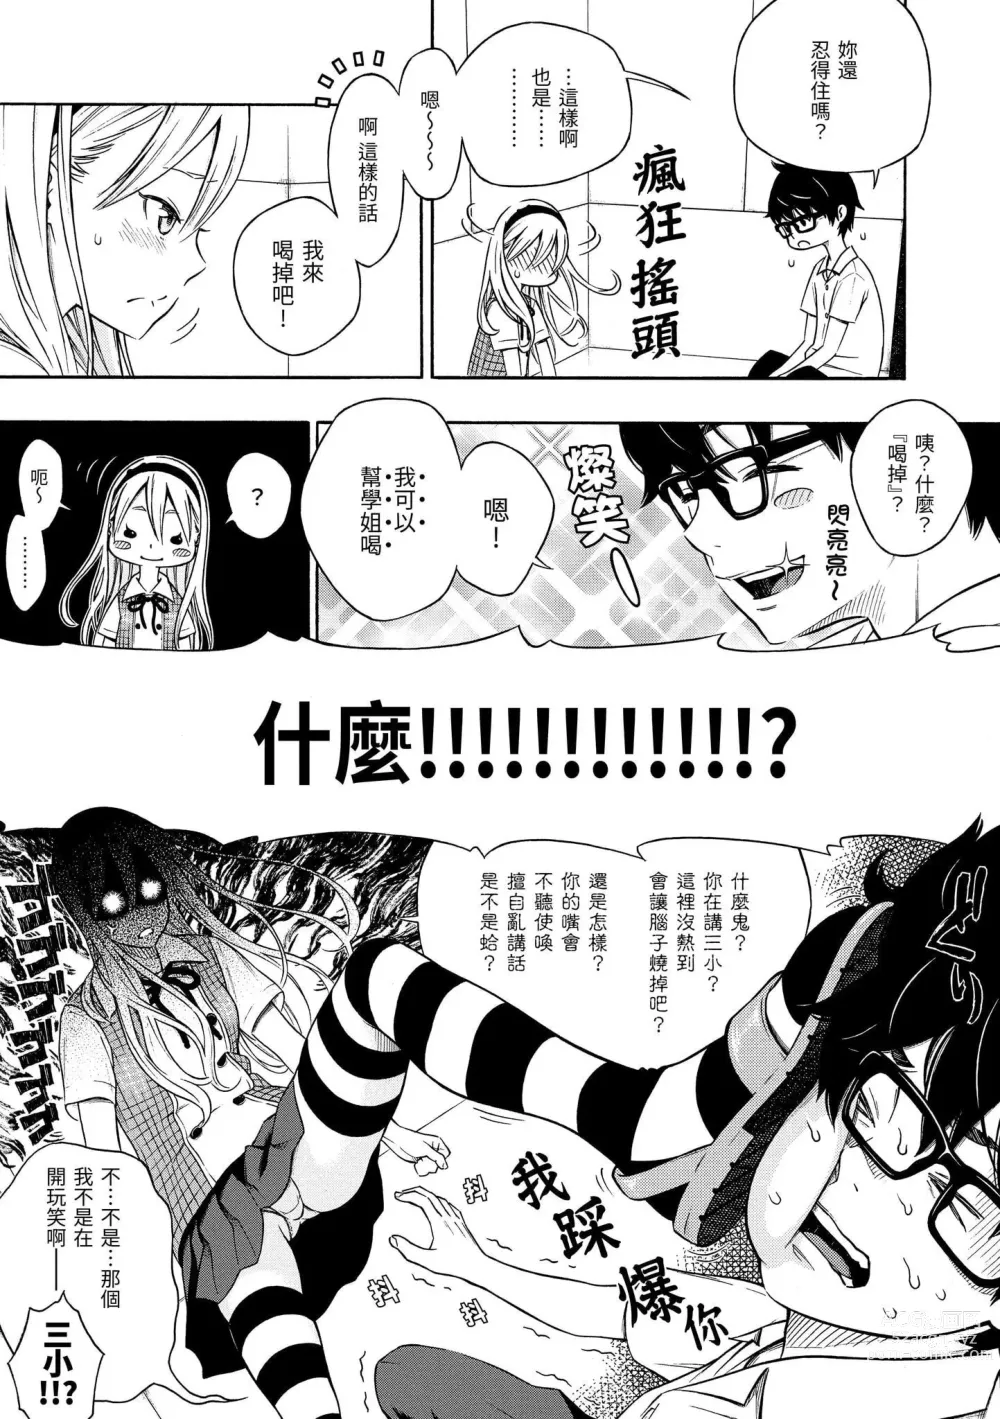 Page 12 of manga 放學後的香草女孩 (decensored)